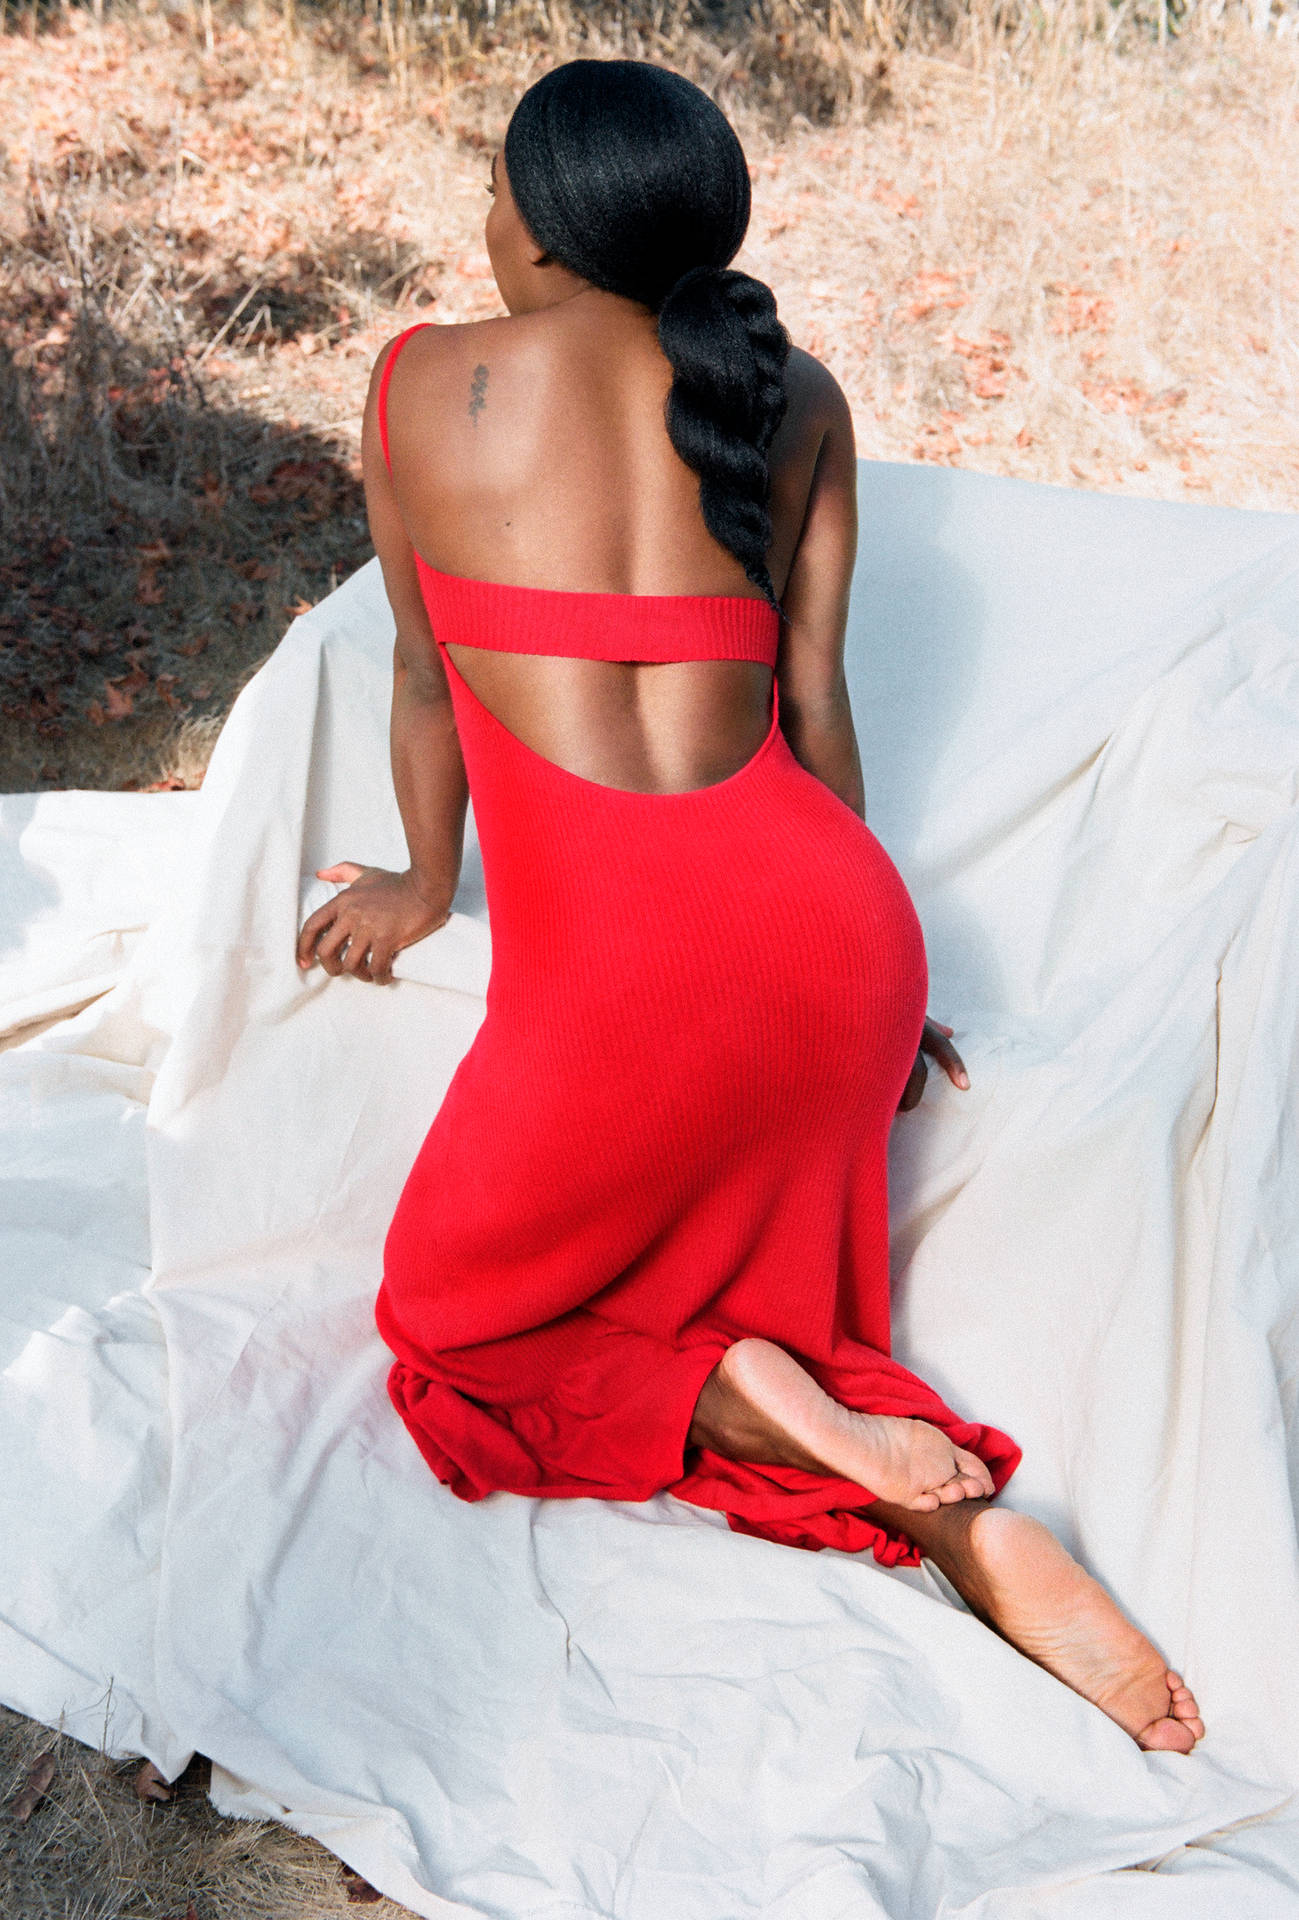 Sexy Back Serena Williams Wallpaper